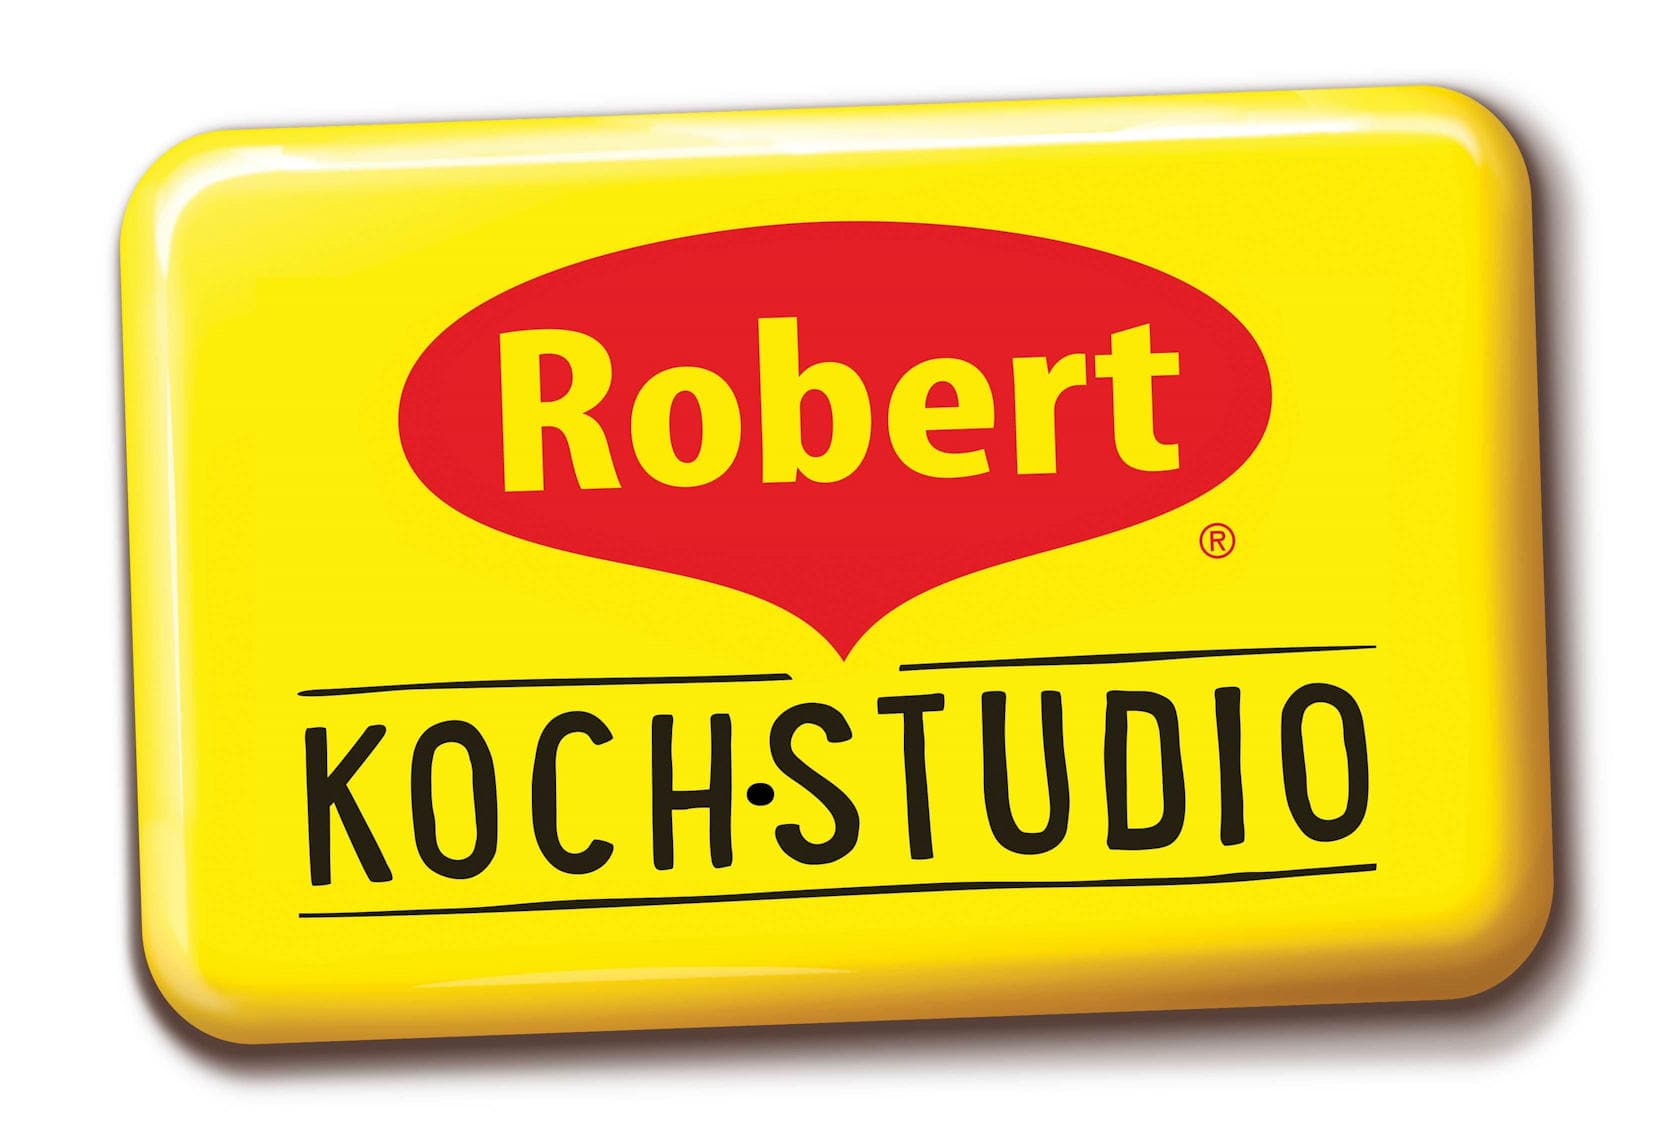 Robert KOCH-STUDIO qpress